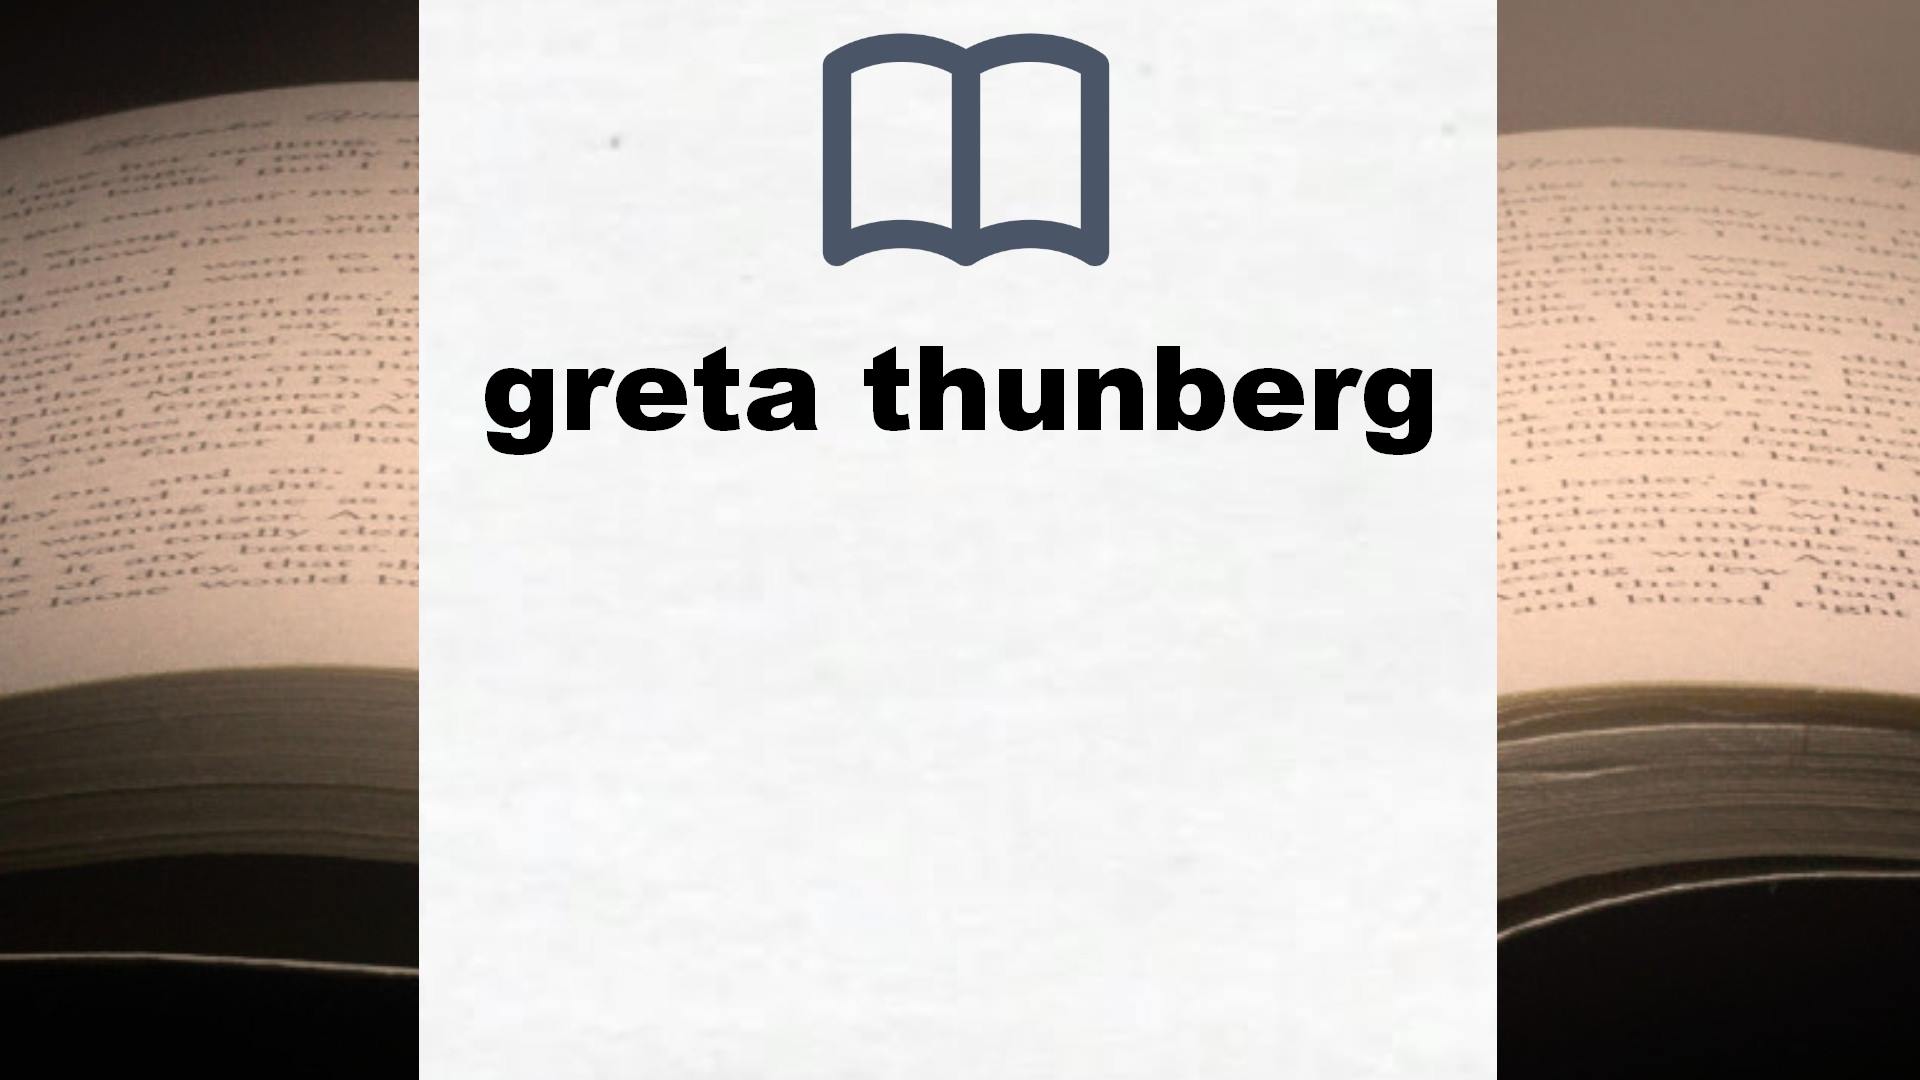 Libros sobre greta thunberg